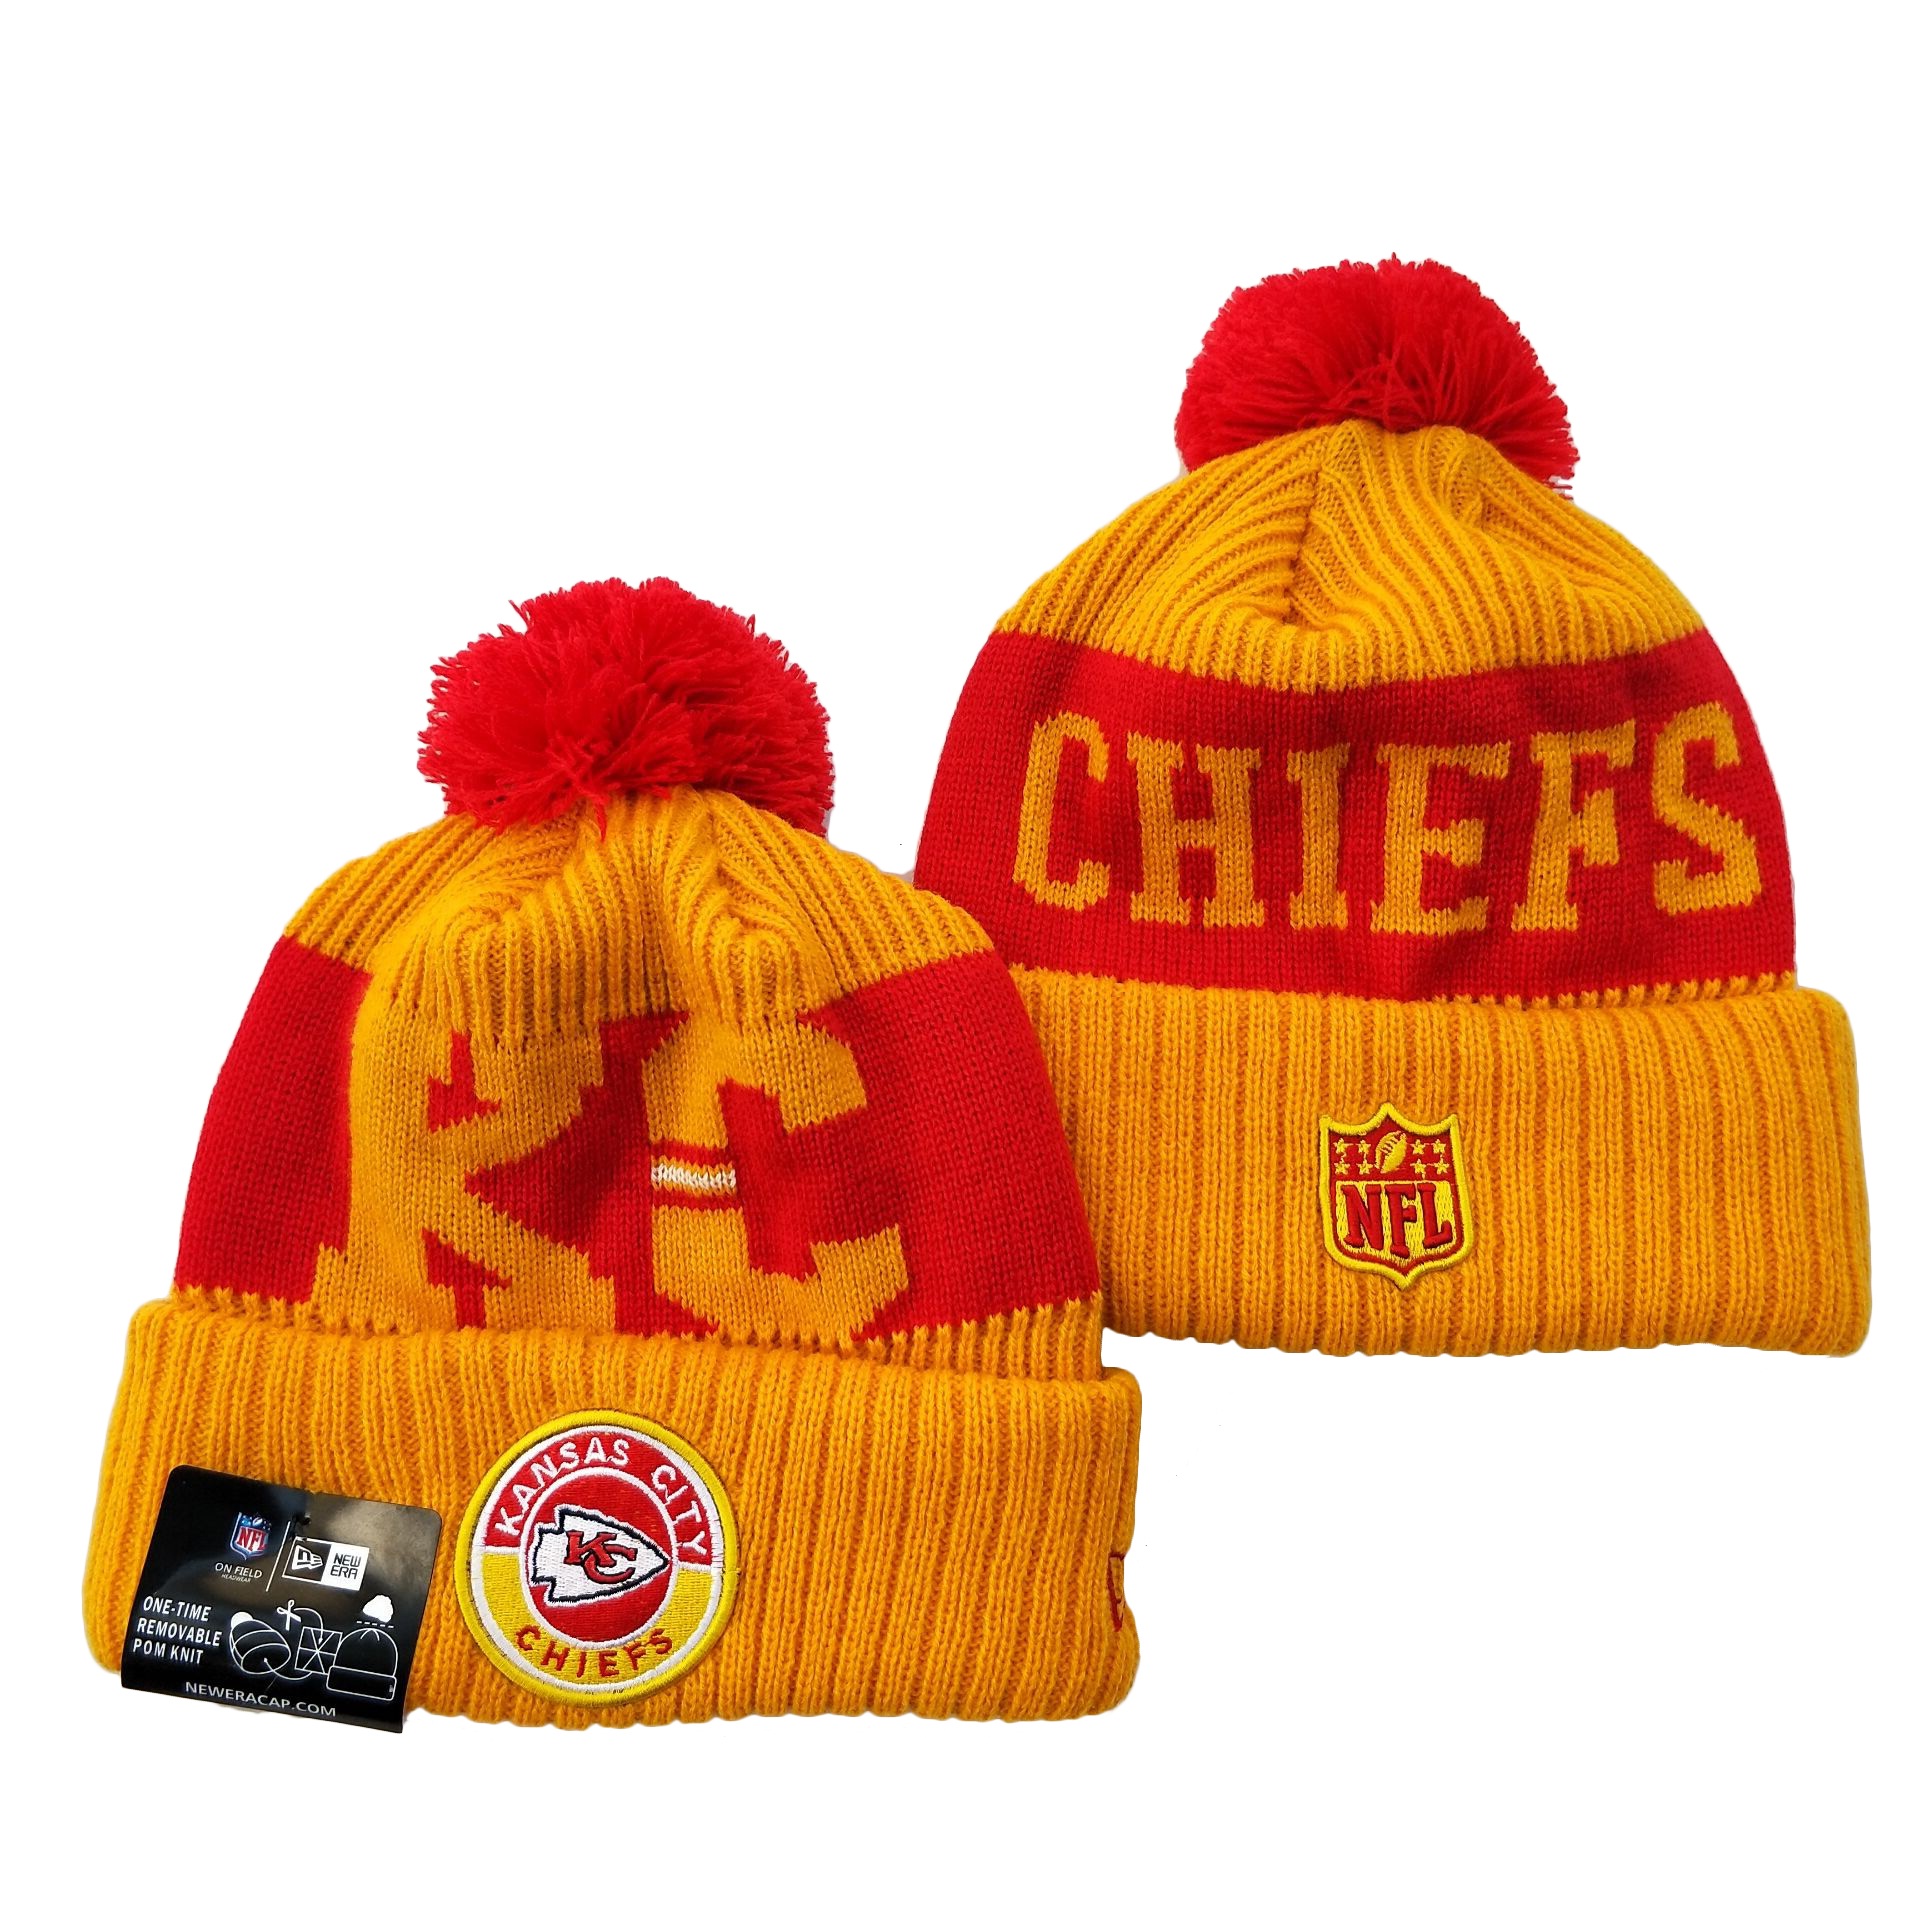 Chiefs Team Logo Yellow 2020 NFL Sideline Pom Cuffed Knit Hat YD